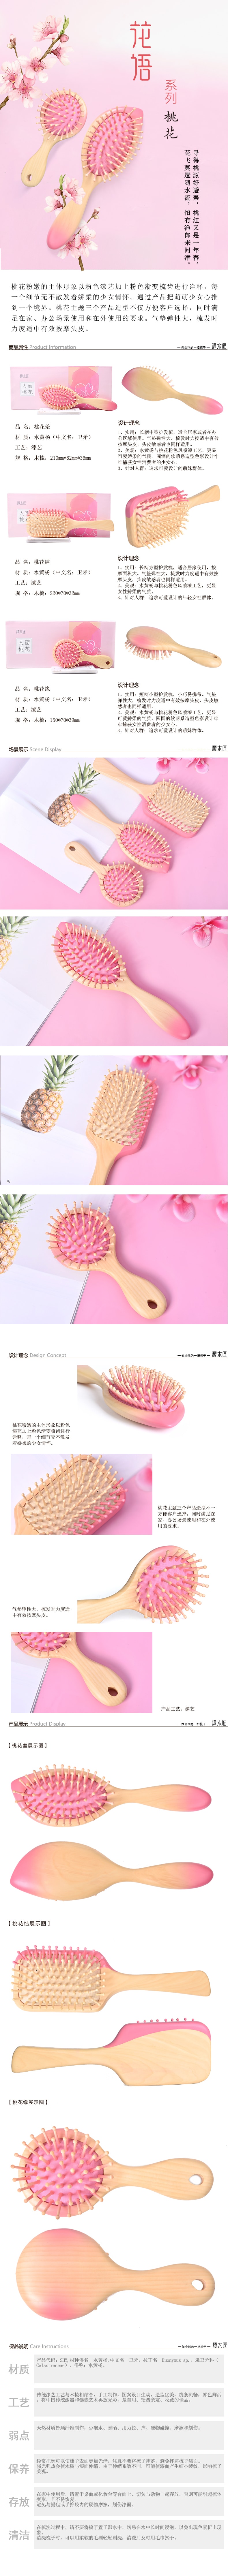 中国谭木匠 天然木梳子护发梳桃花羞 粉色 一件入